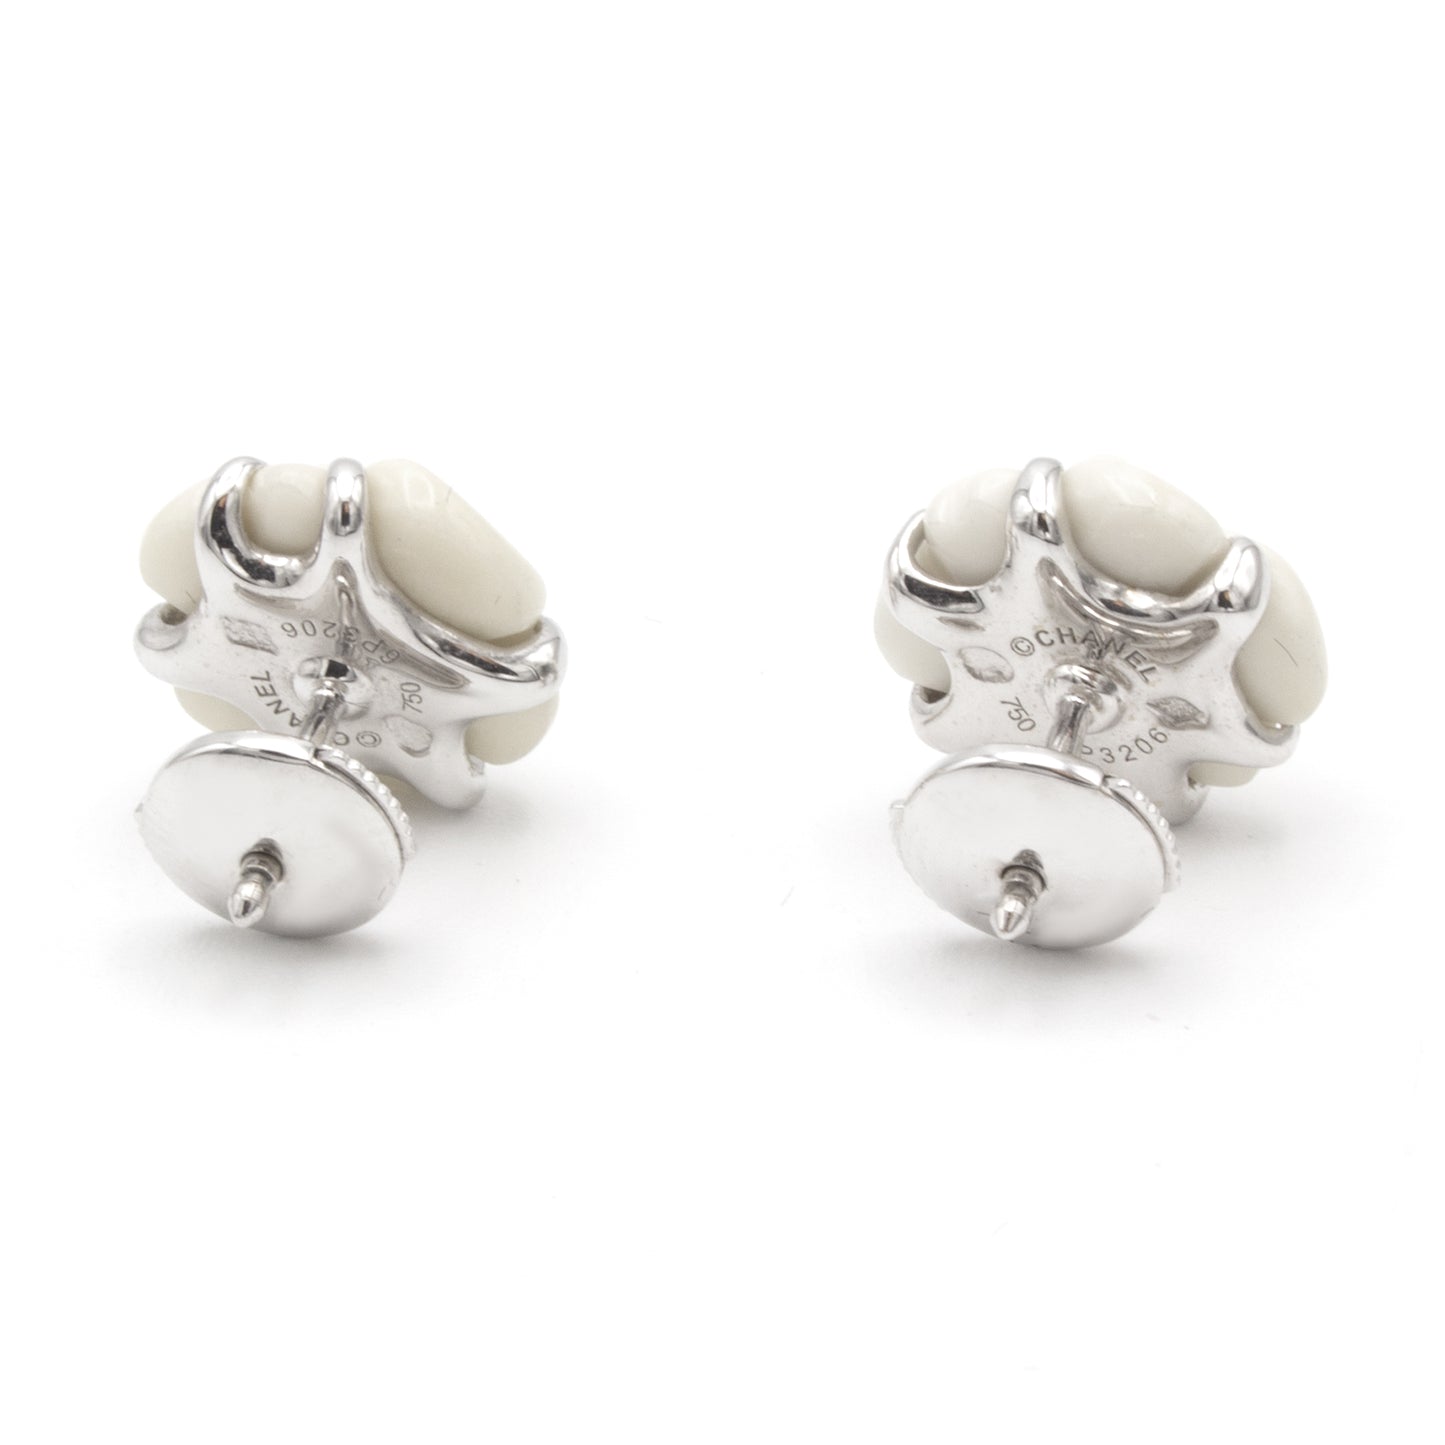 Chanel Camelia earrings